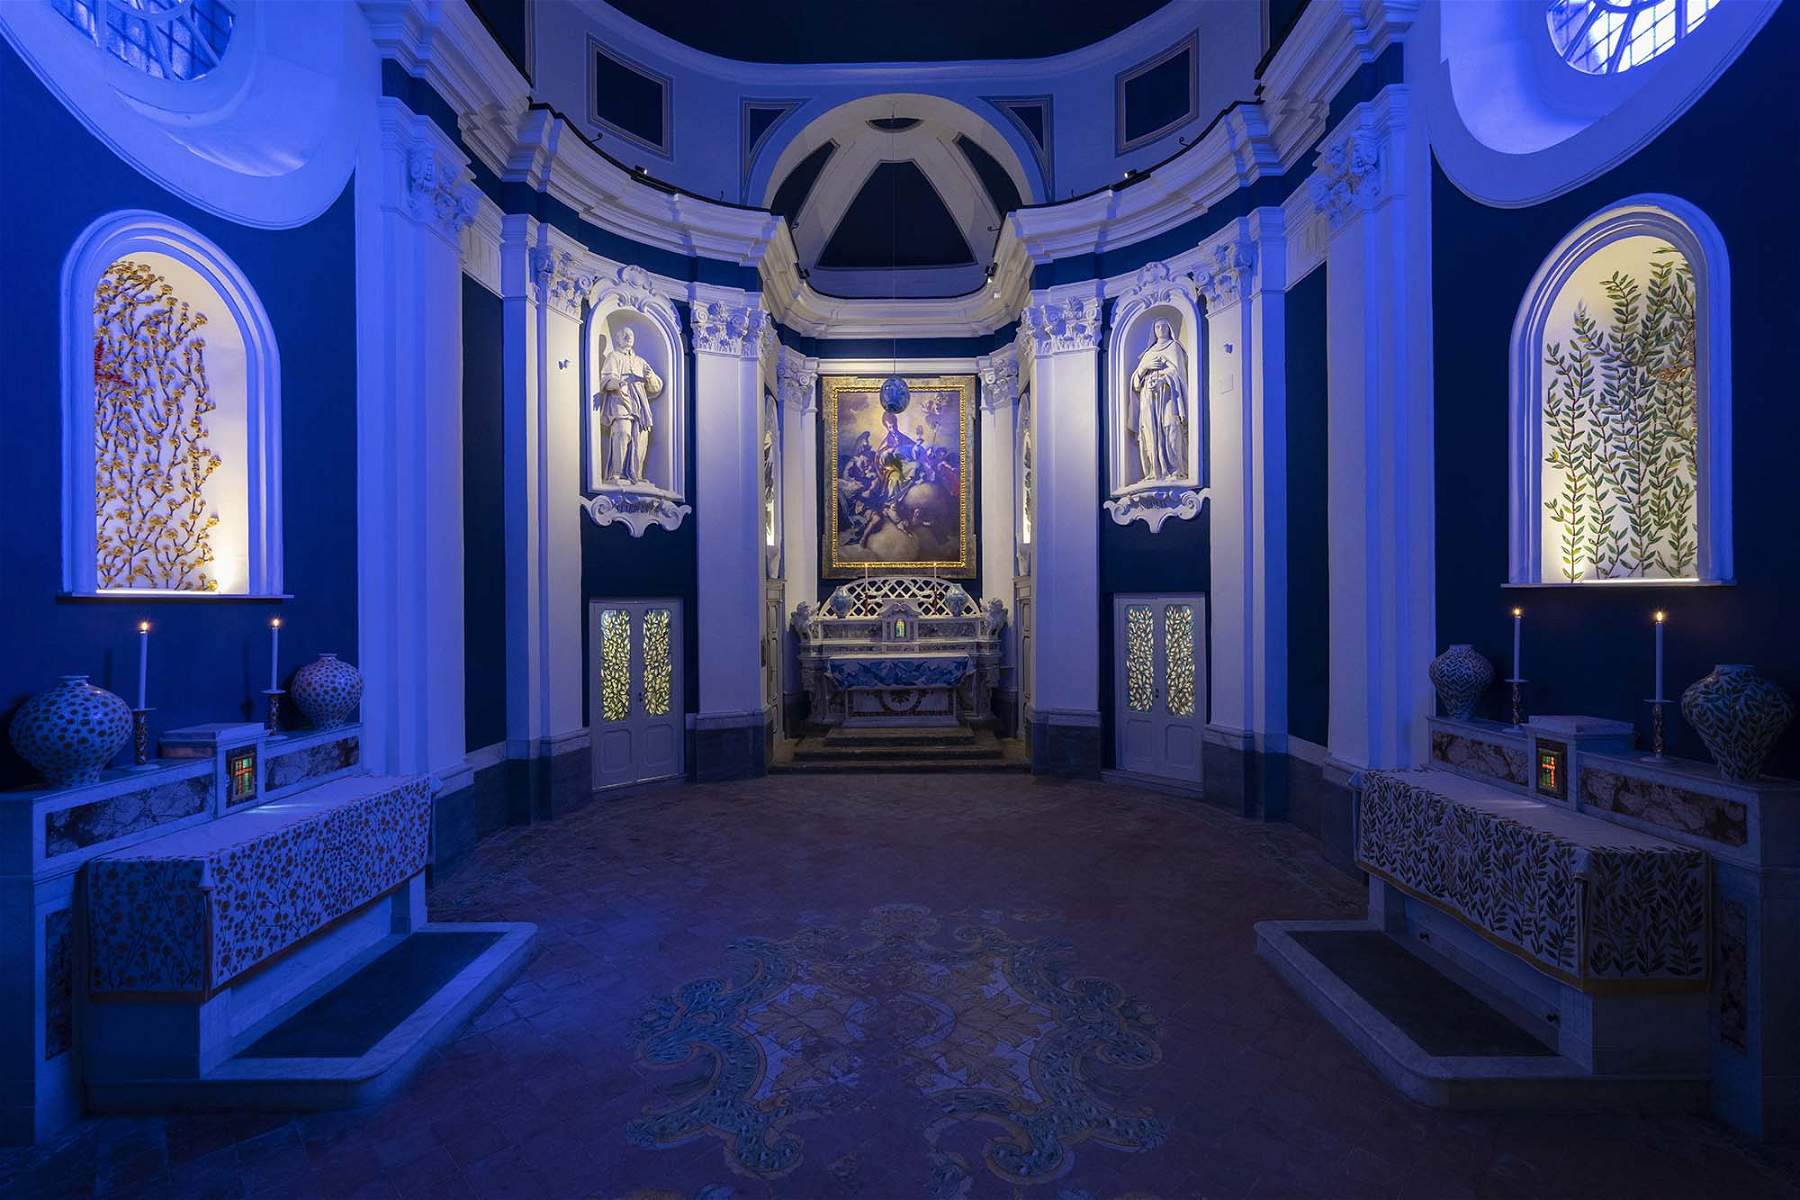 Napoli, dopo 50 anni riapre la chiesa di San Gennaro a Capodimonte, ridecorata da Calatrava